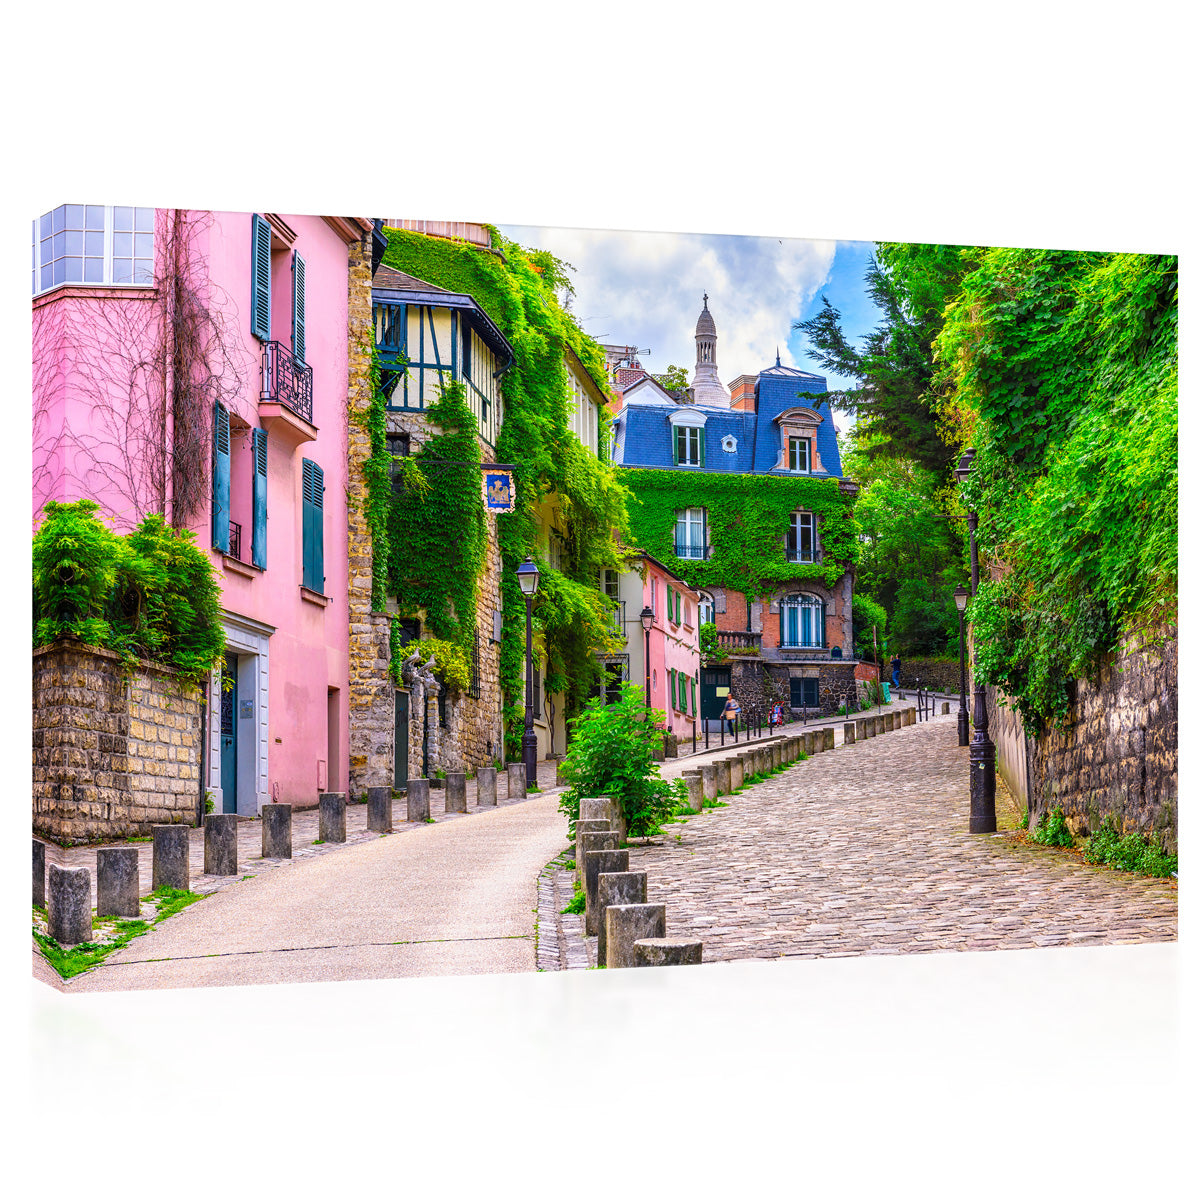 Impressão de tela - Cosy Montmartre Cityscape em Paris, França #E0227